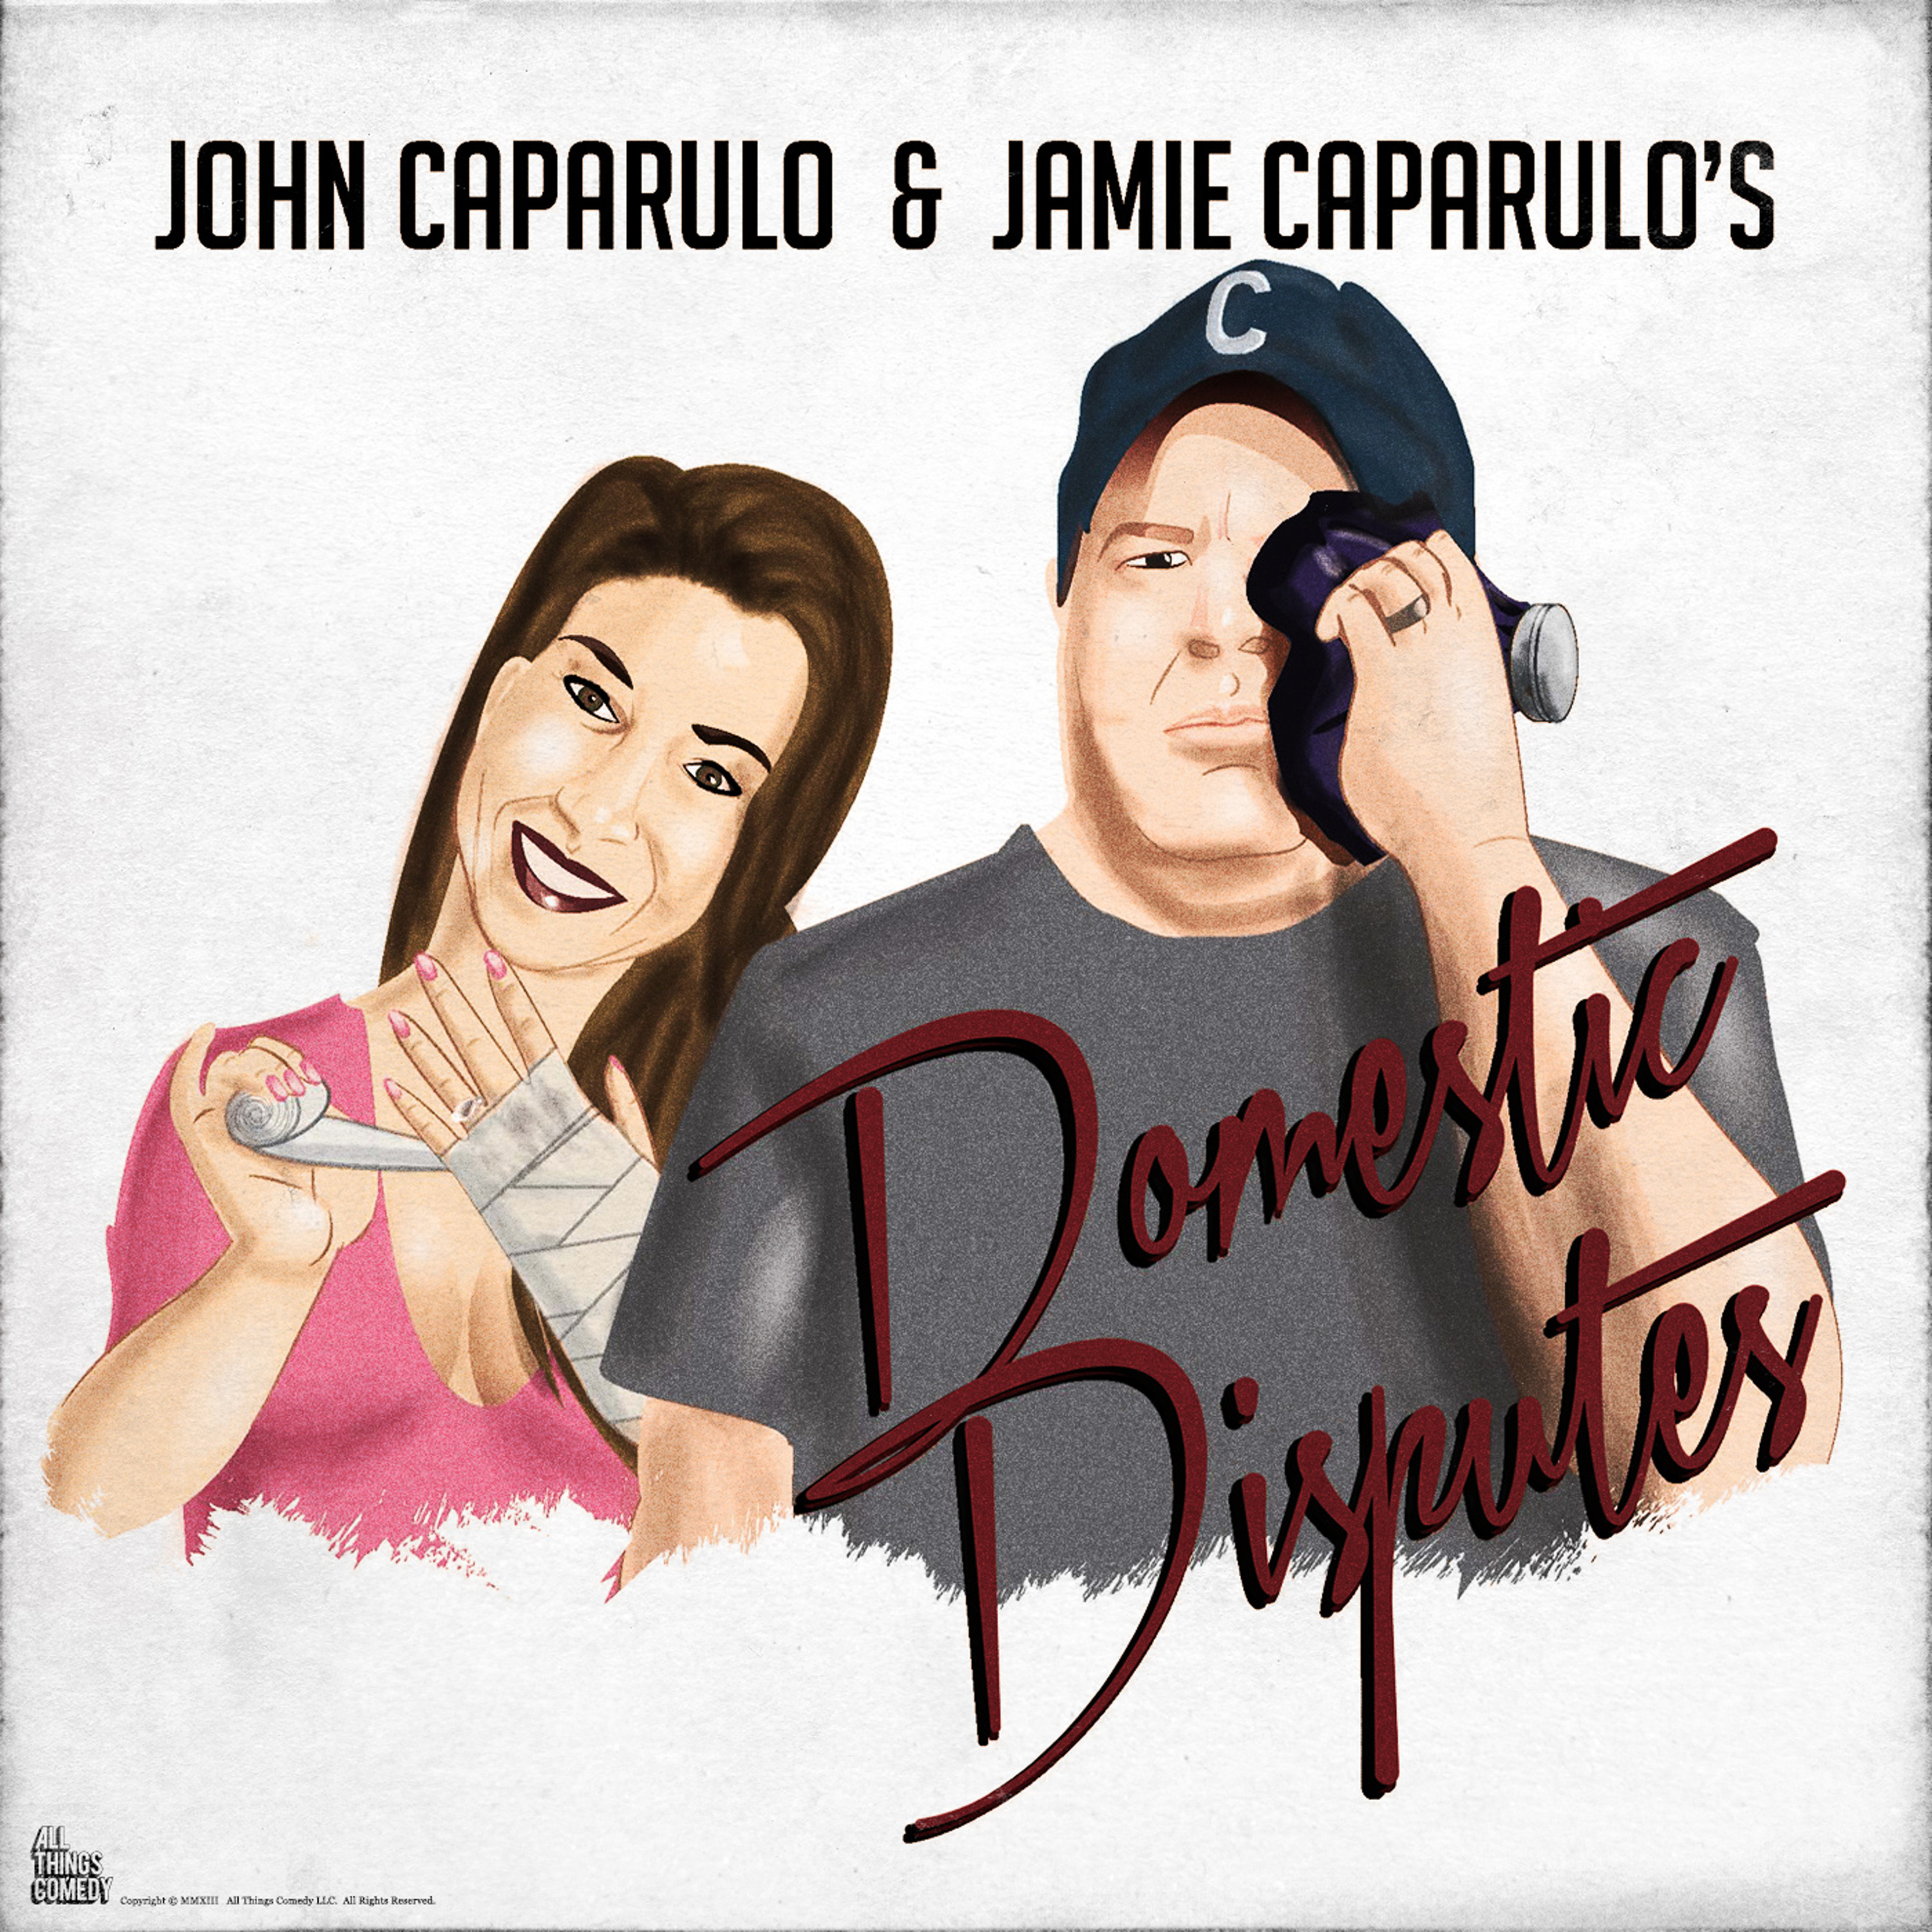 JOHN CAPARULO & JAMIE CAPARULO'S DOMESTIC DISPUTES #21 - BUZZ KILL